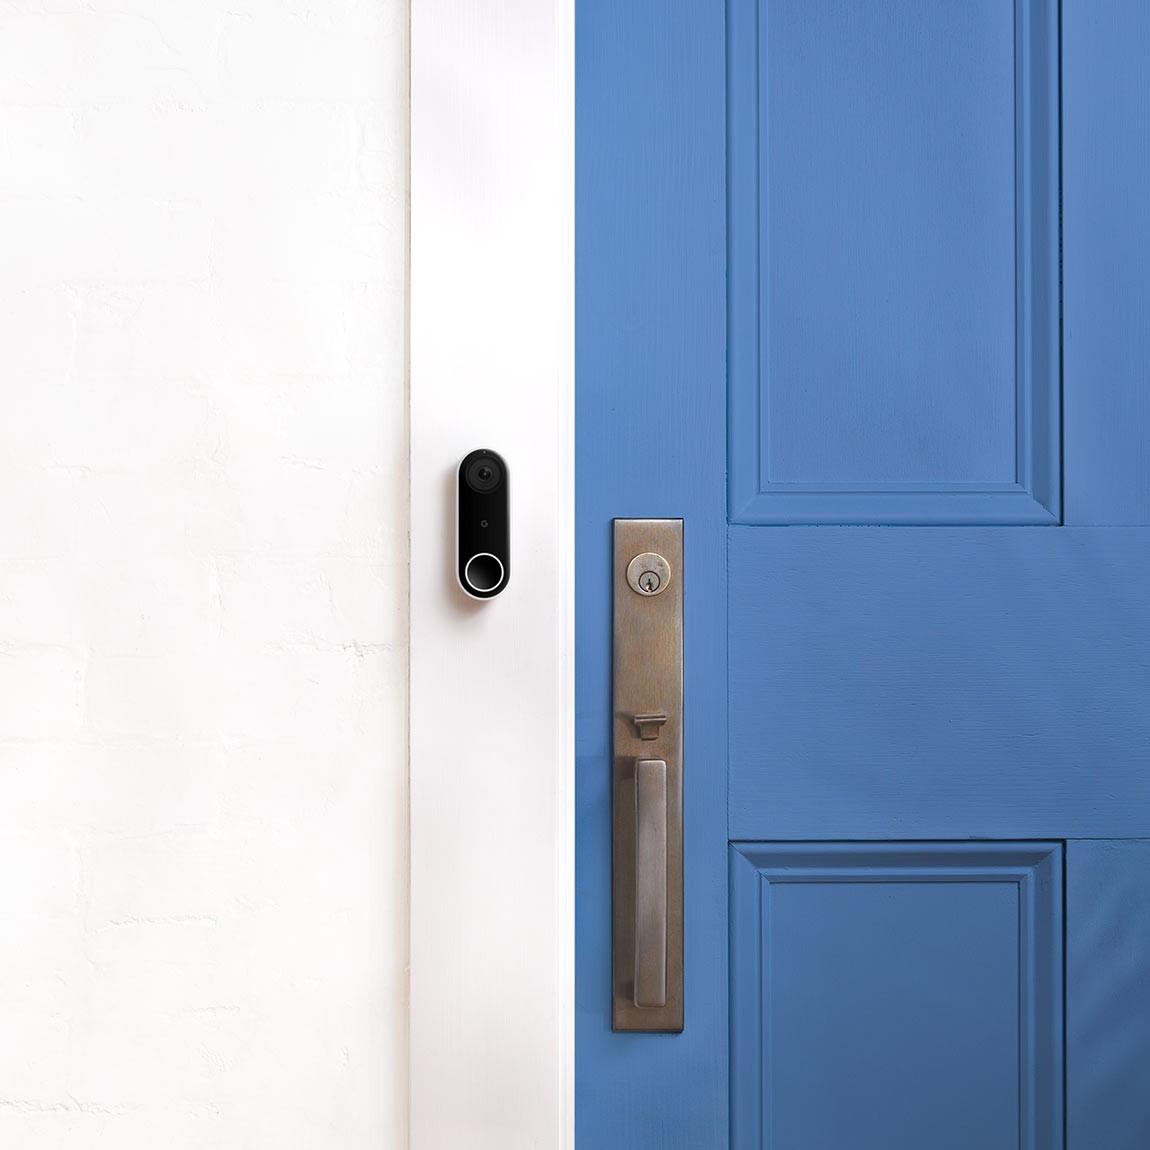 Google Nest Doorbell (Mit Kabel) neben Tür